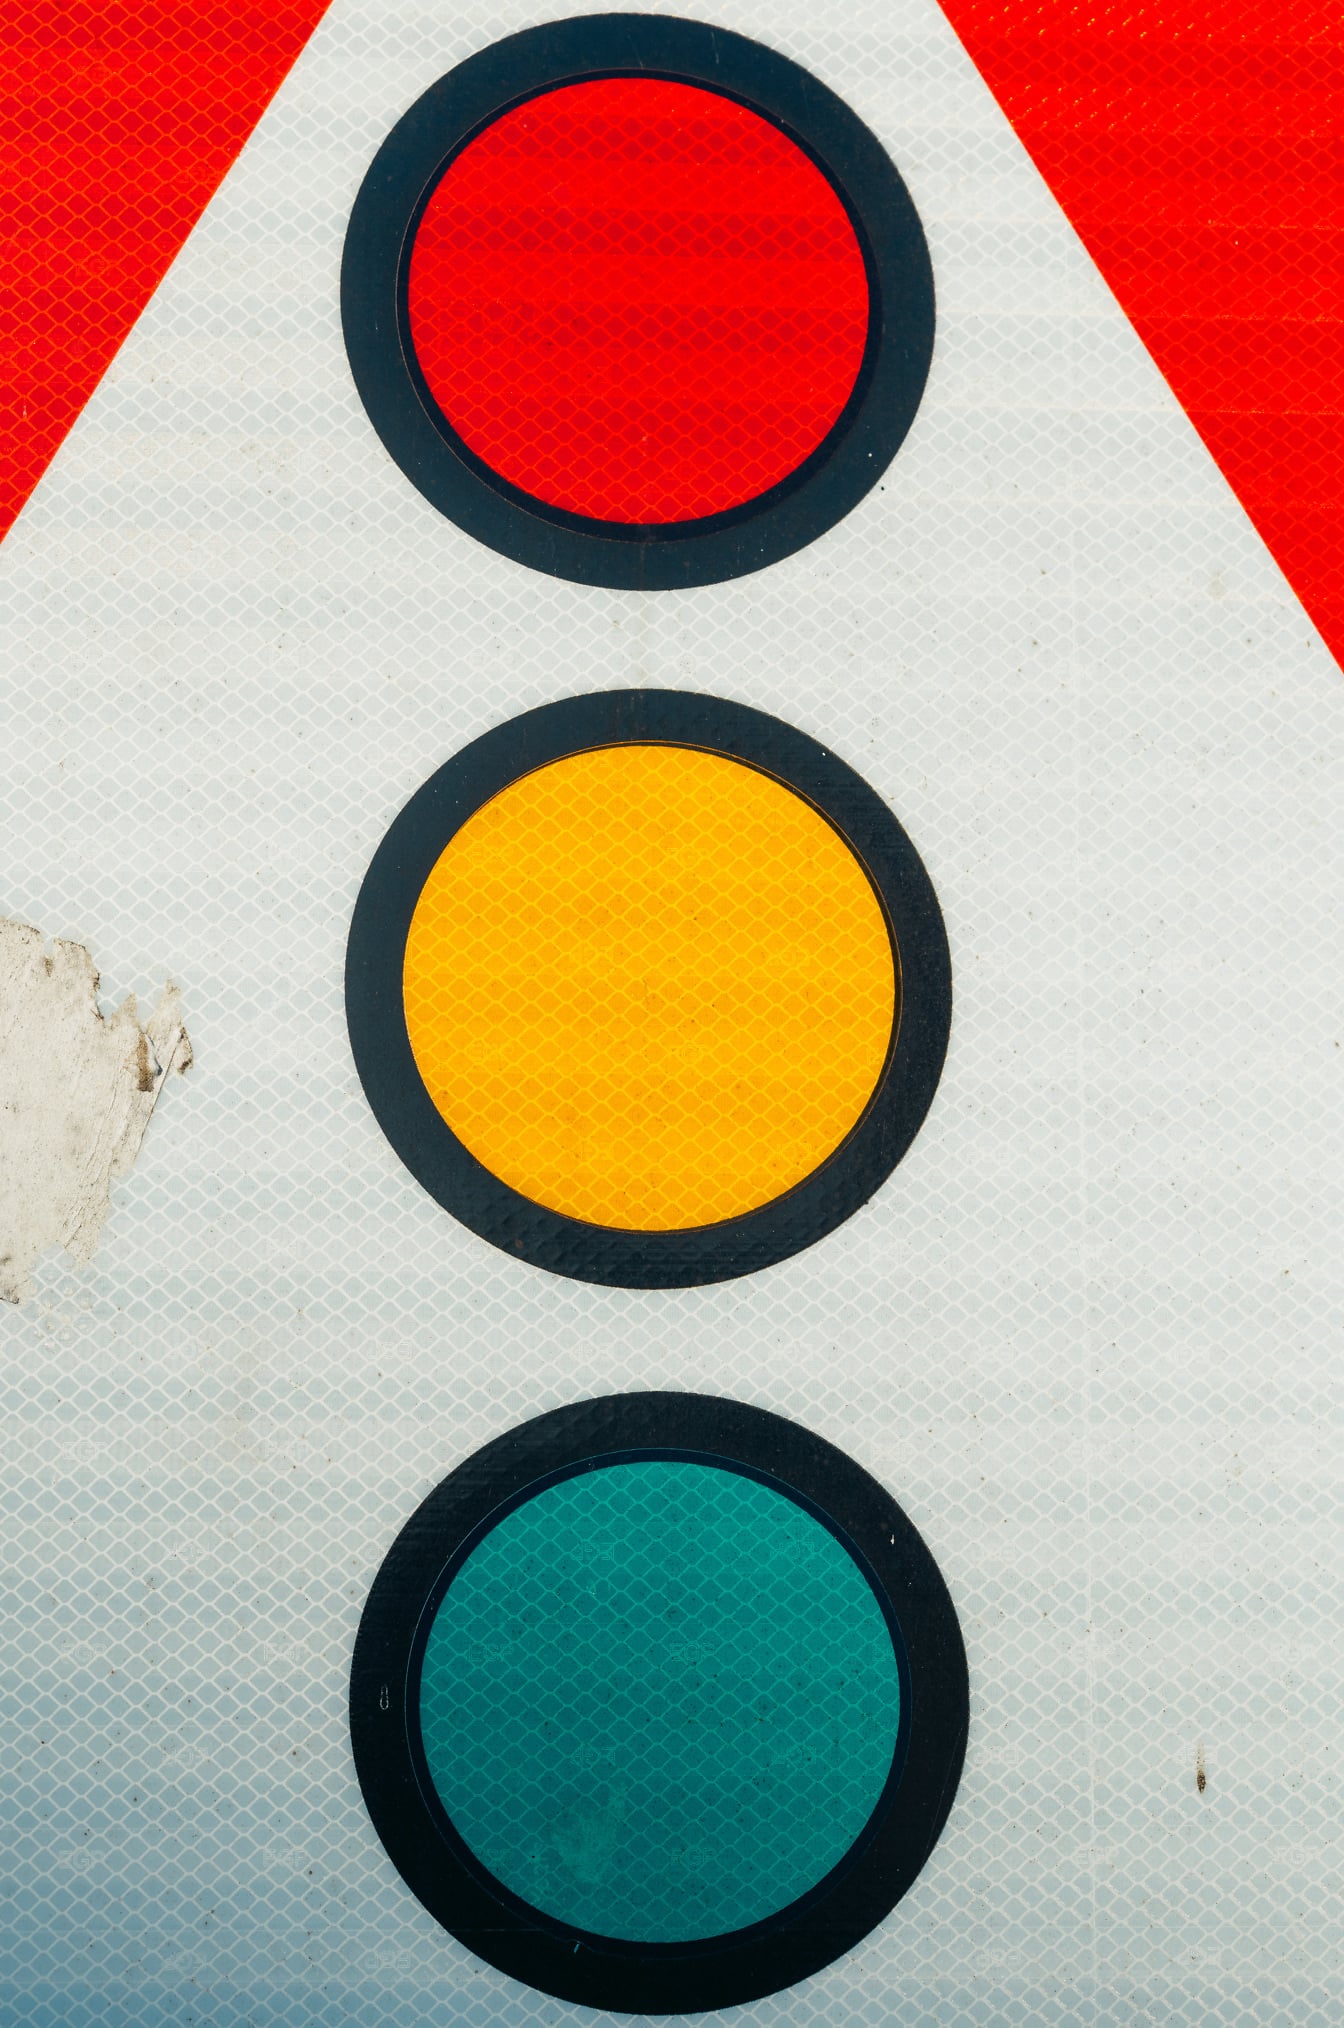 Biển báo giao thông Semaphore với sơn phản quang huỳnh quang